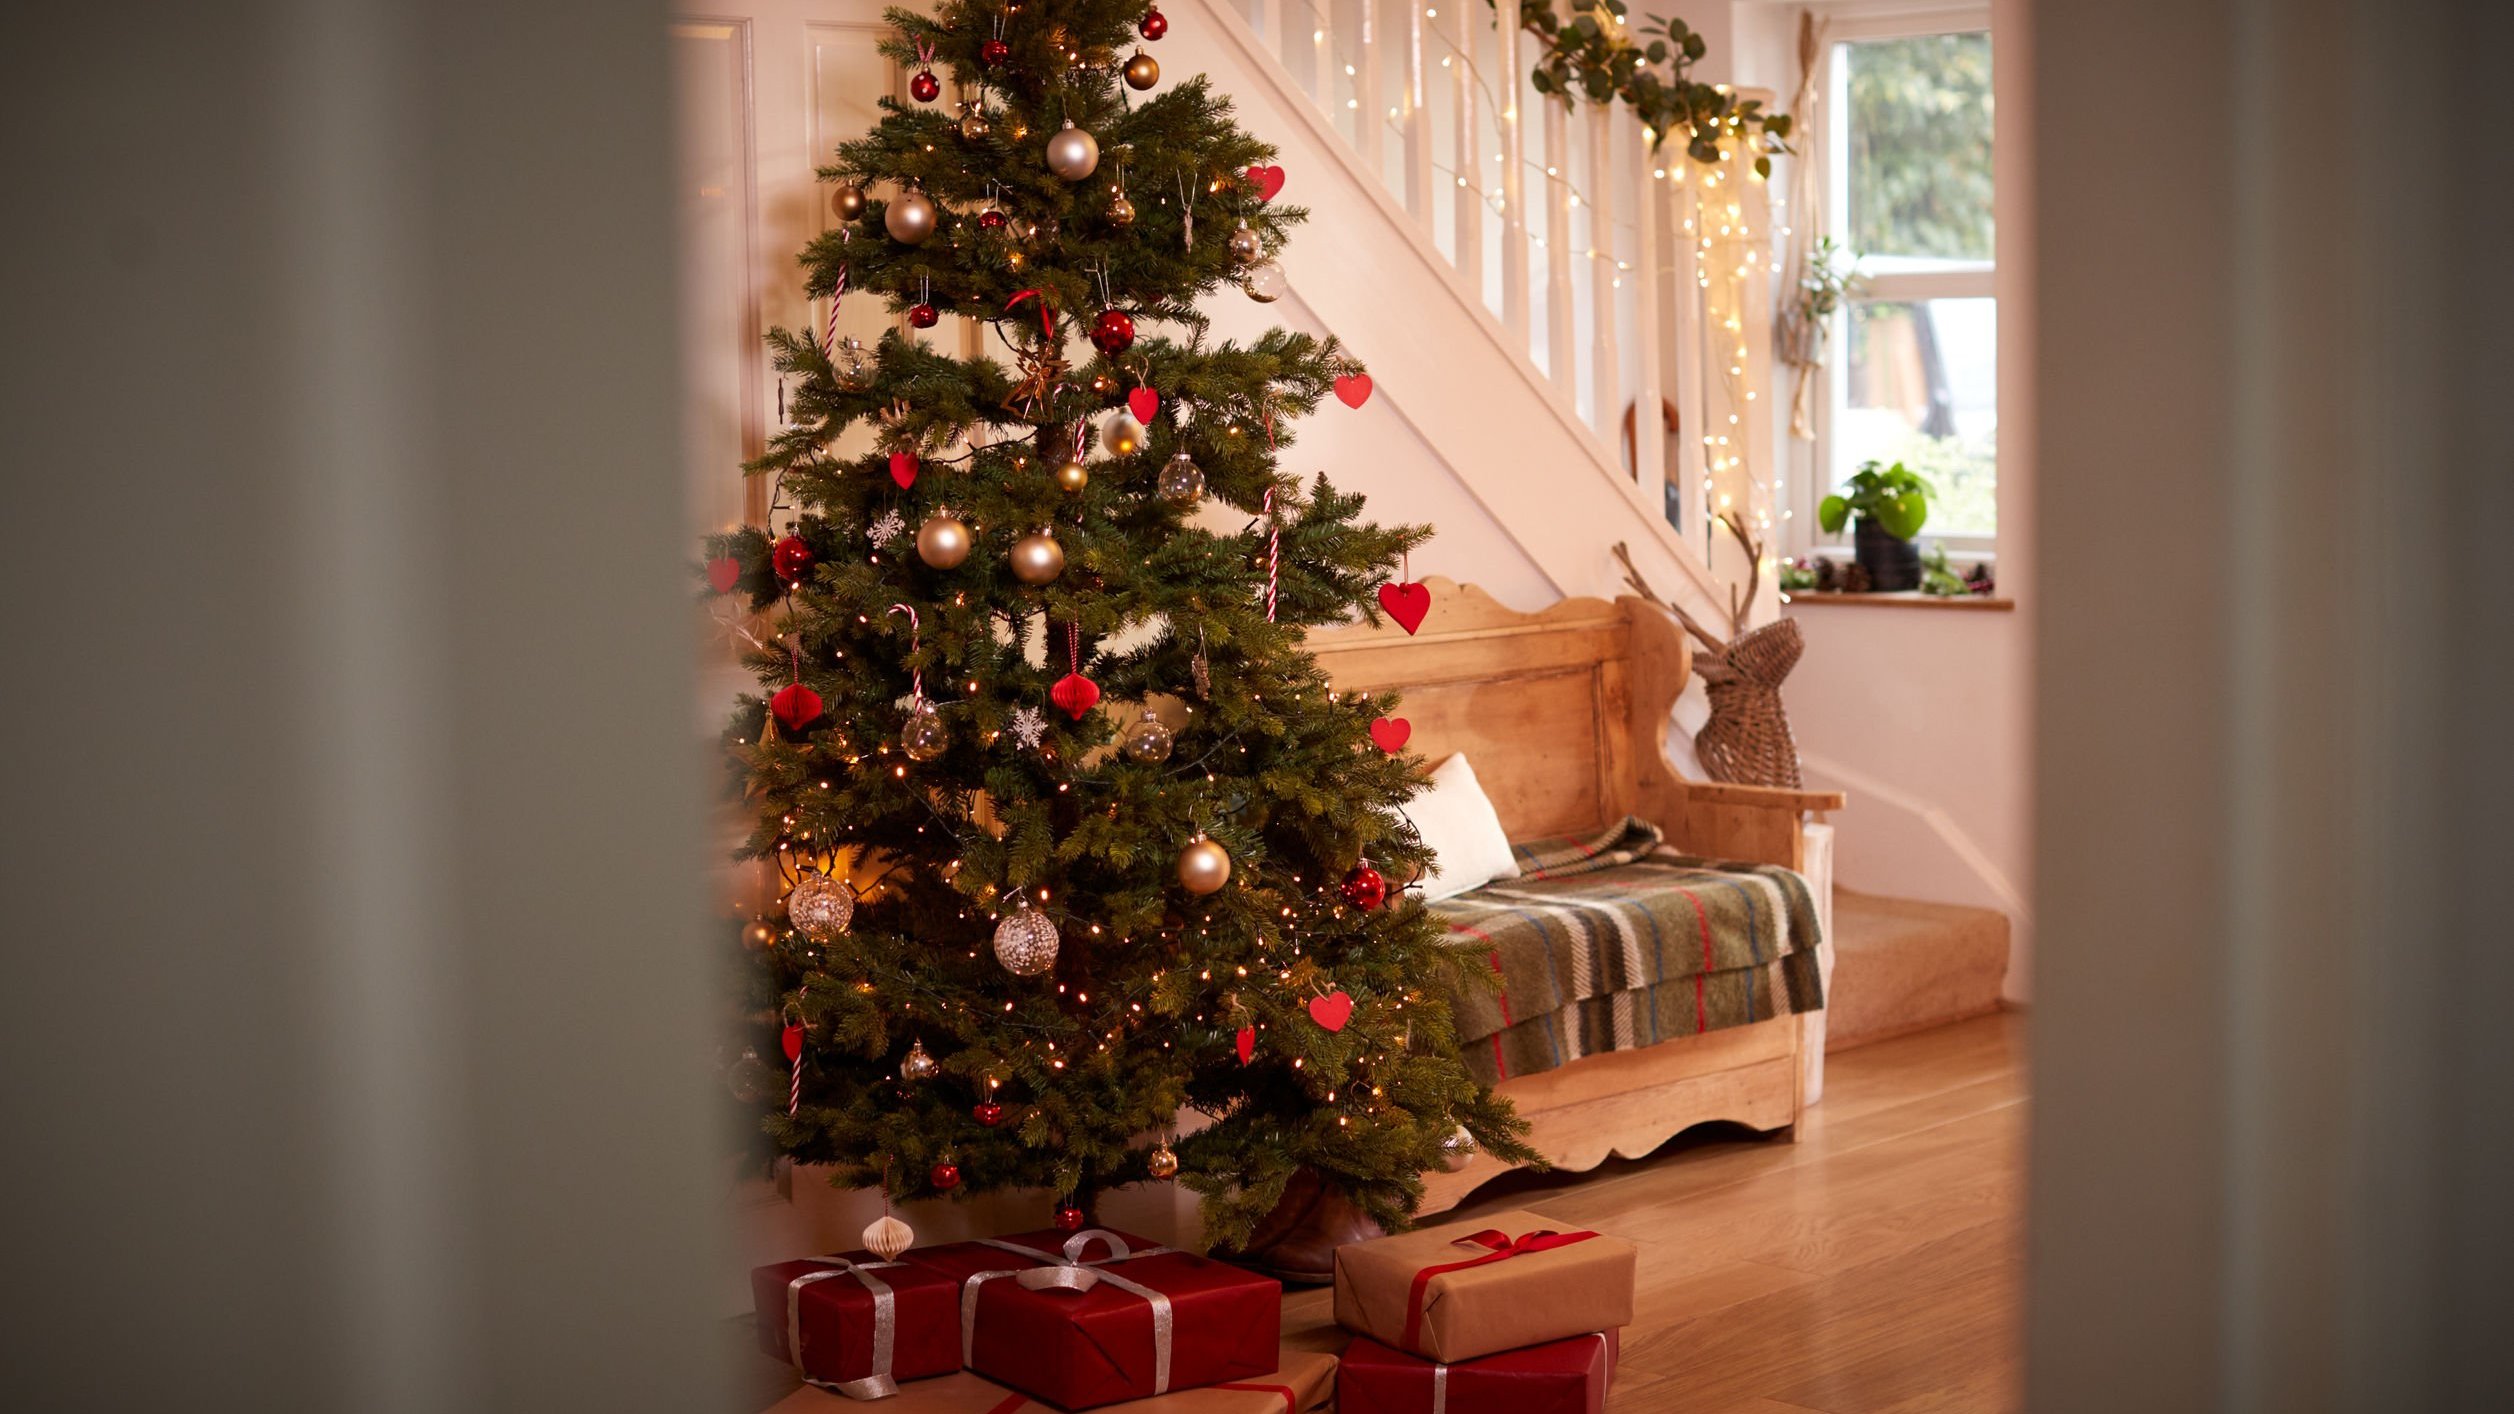 Árvore decorada com enfeites natalinos. Abaixo dela, há presentes.